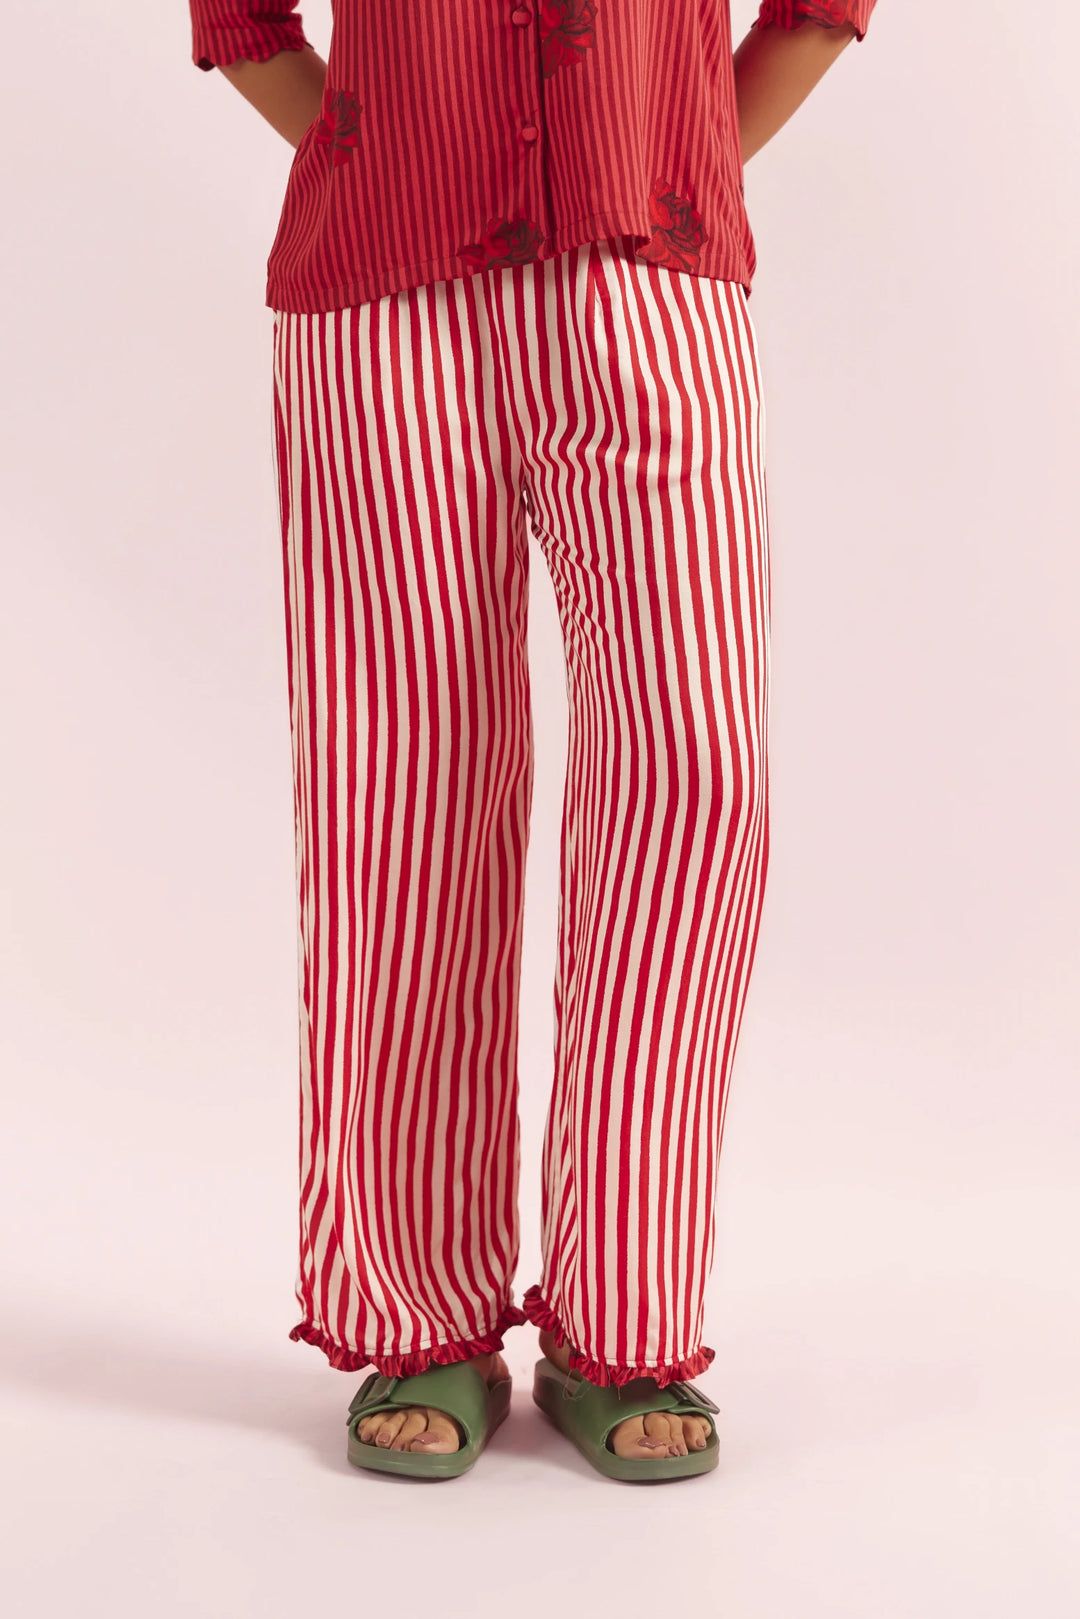 Mad Love Striped PJ pants